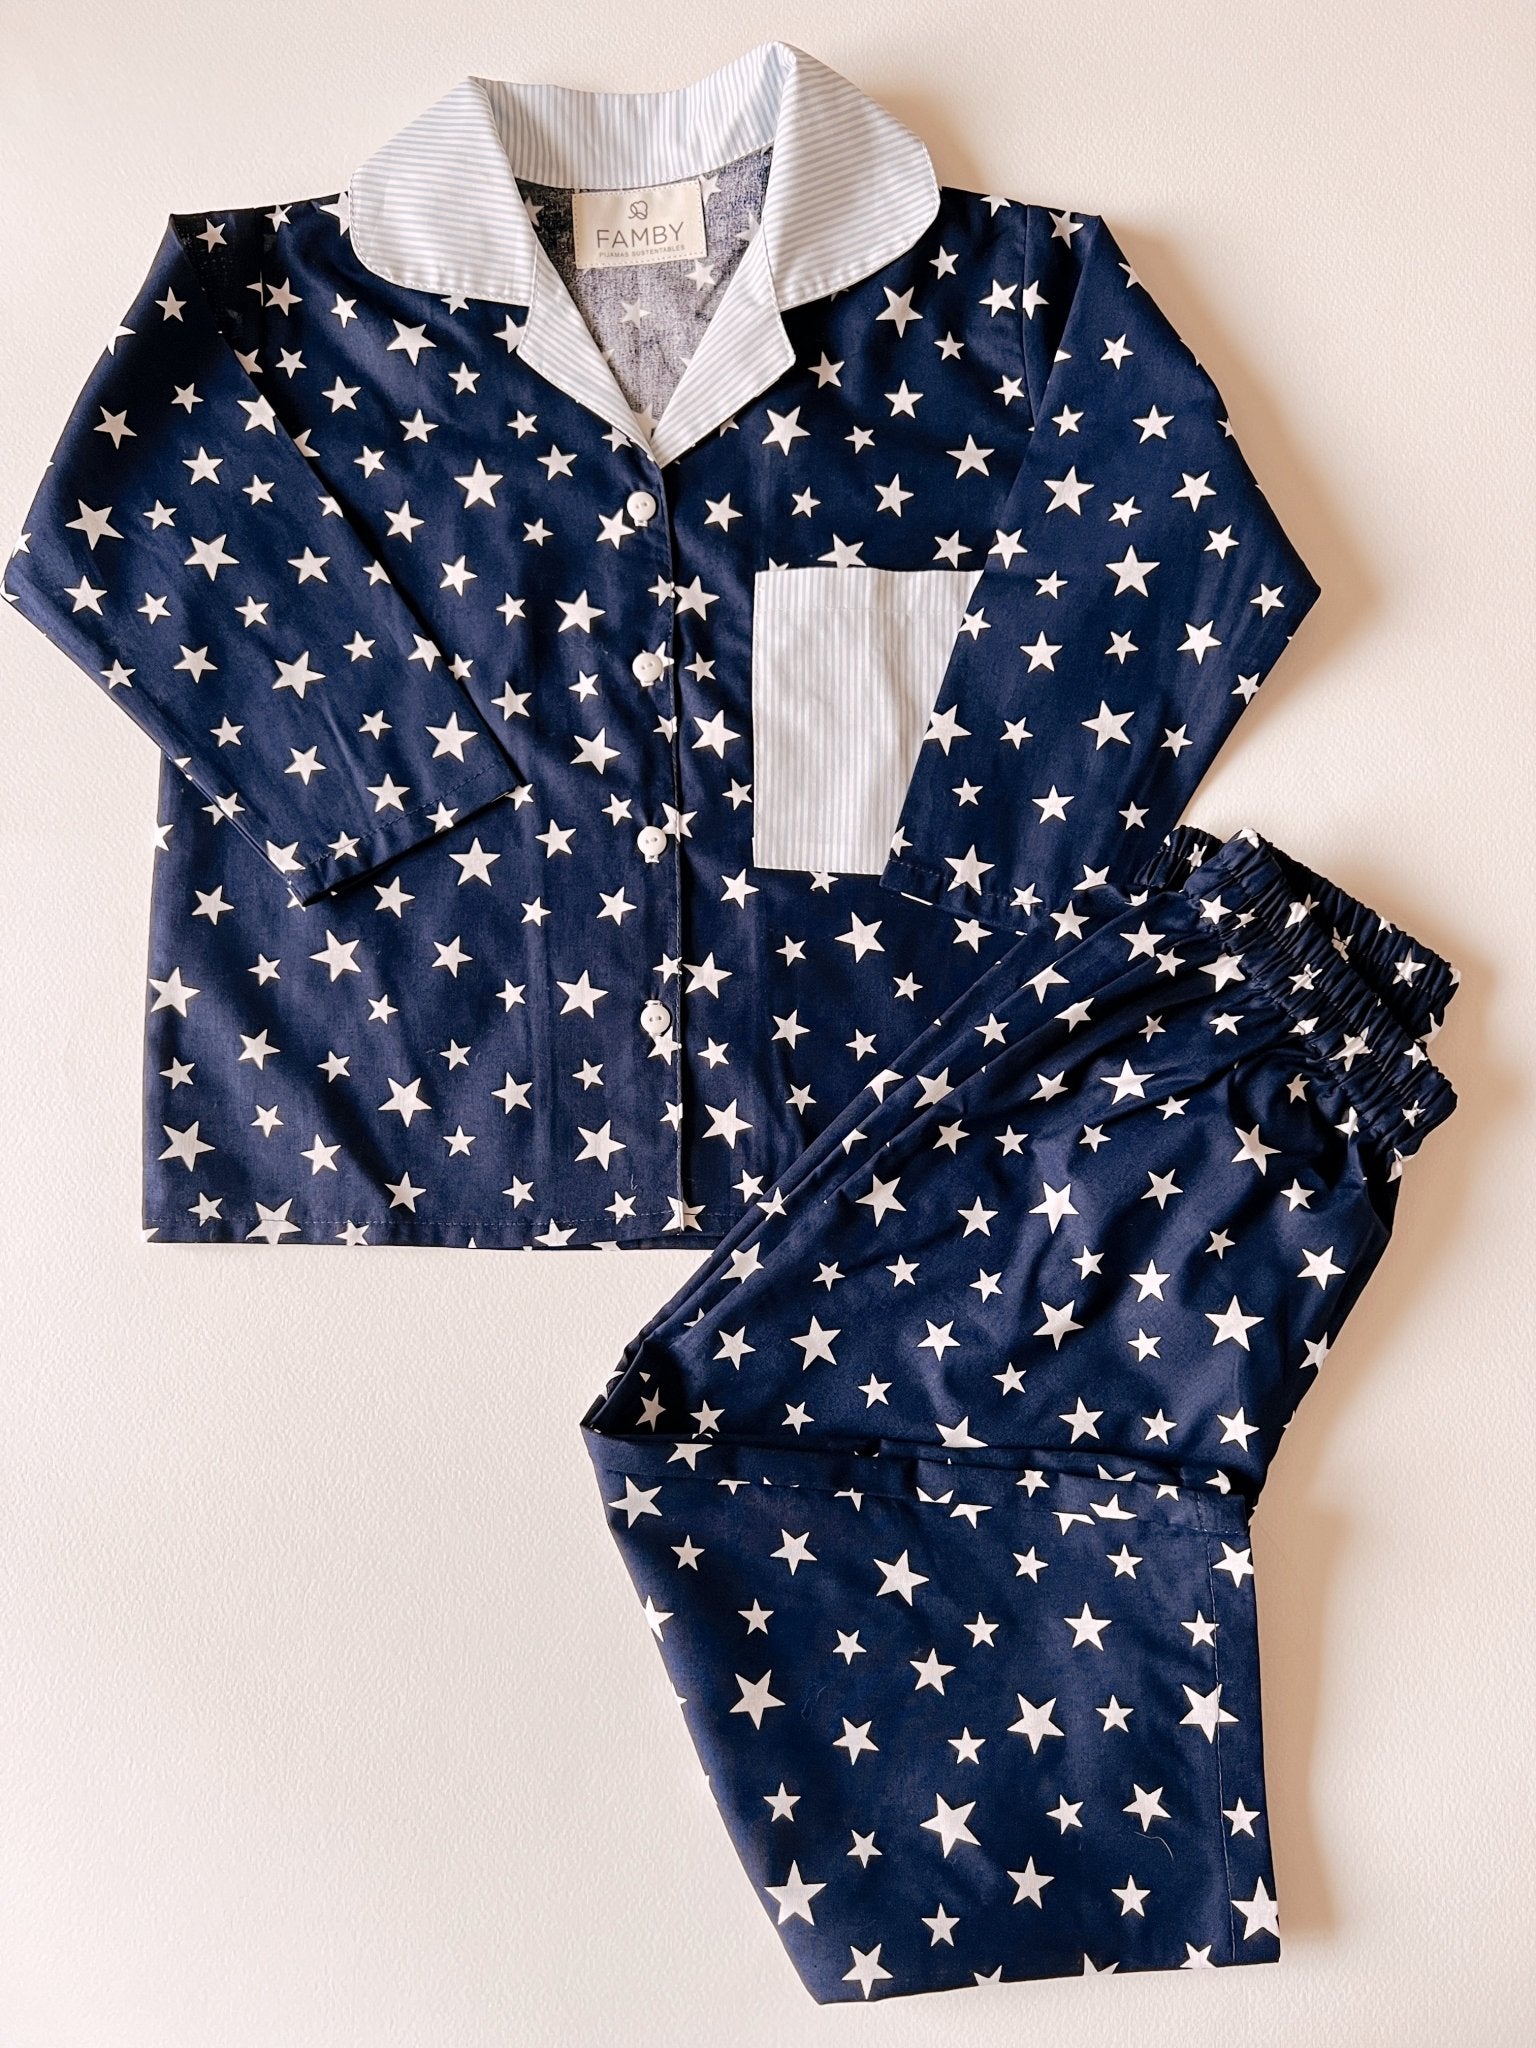 Pijama Lineas celestes y estrellas (2 versiones) - fambypj